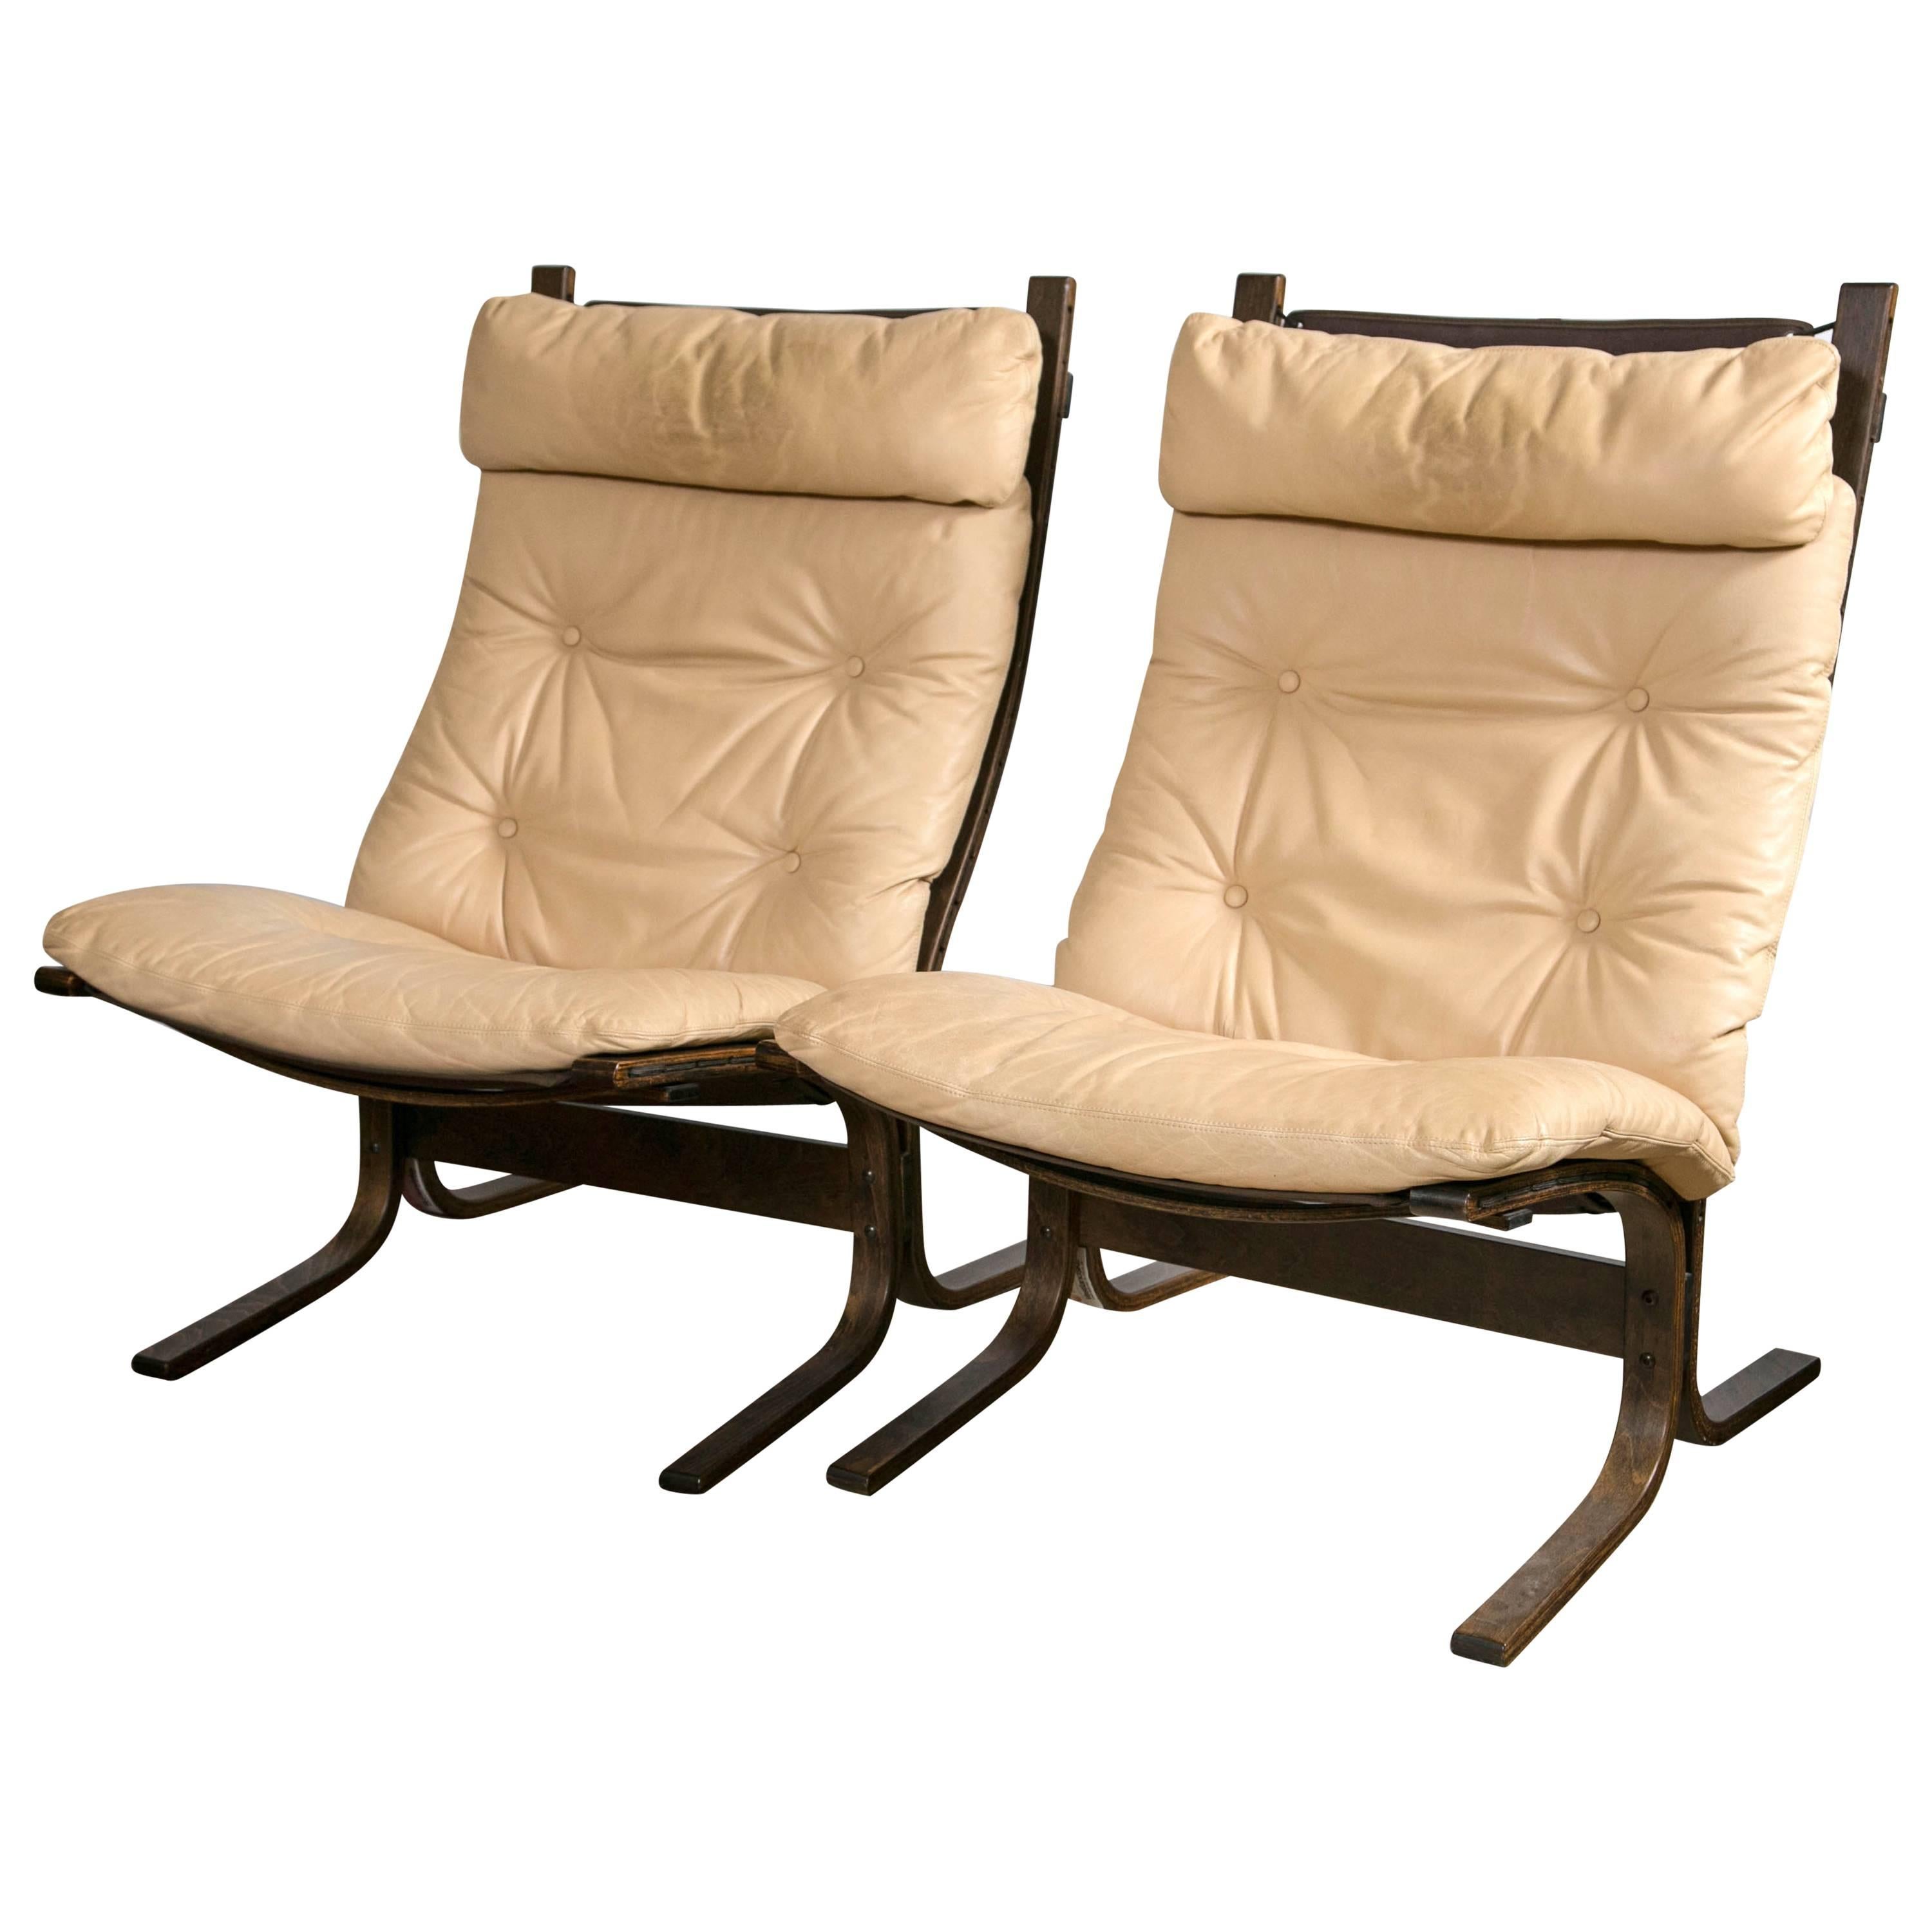 Pair of Westnofa "Siesta" Lounge Chairs by Ingmar Relling